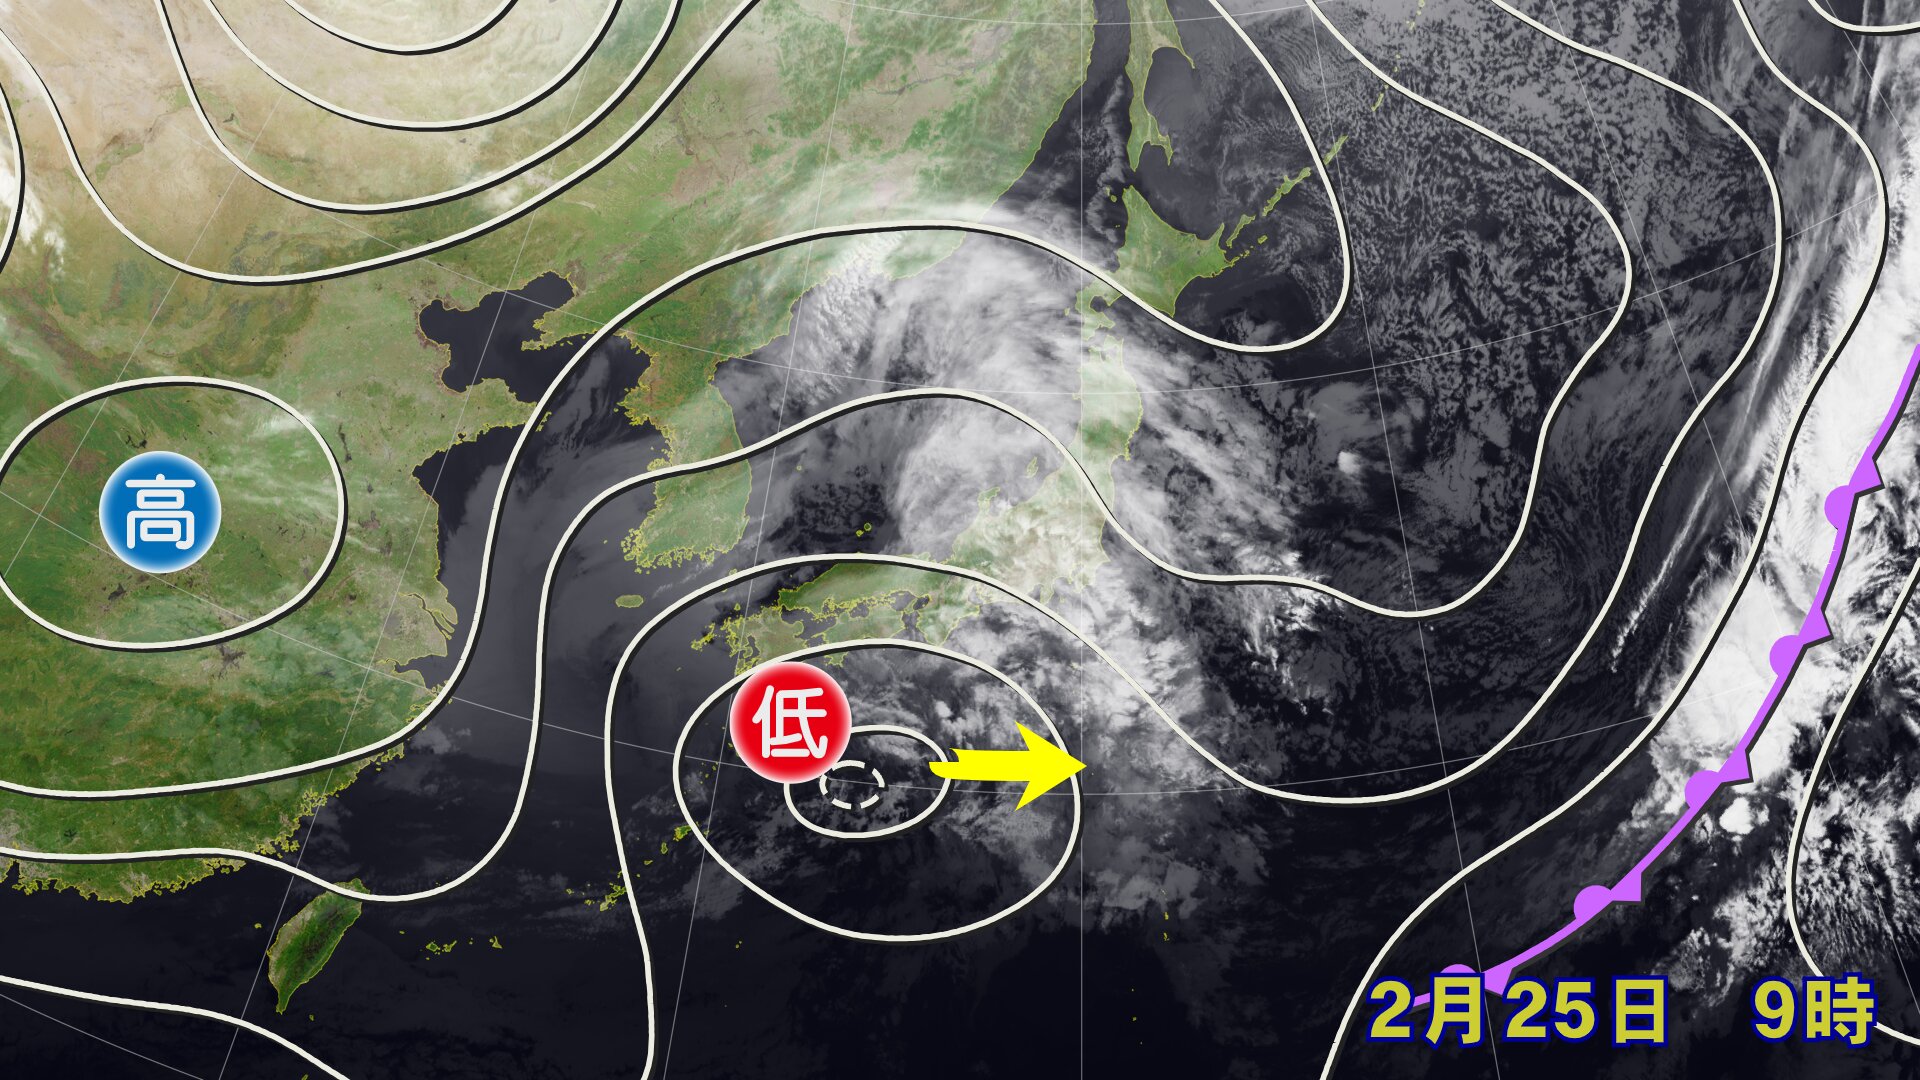 【2月25日午前9時の地上天気図】南岸低気圧による雲が北・東日本に広がっている、ウェザーマップ作画